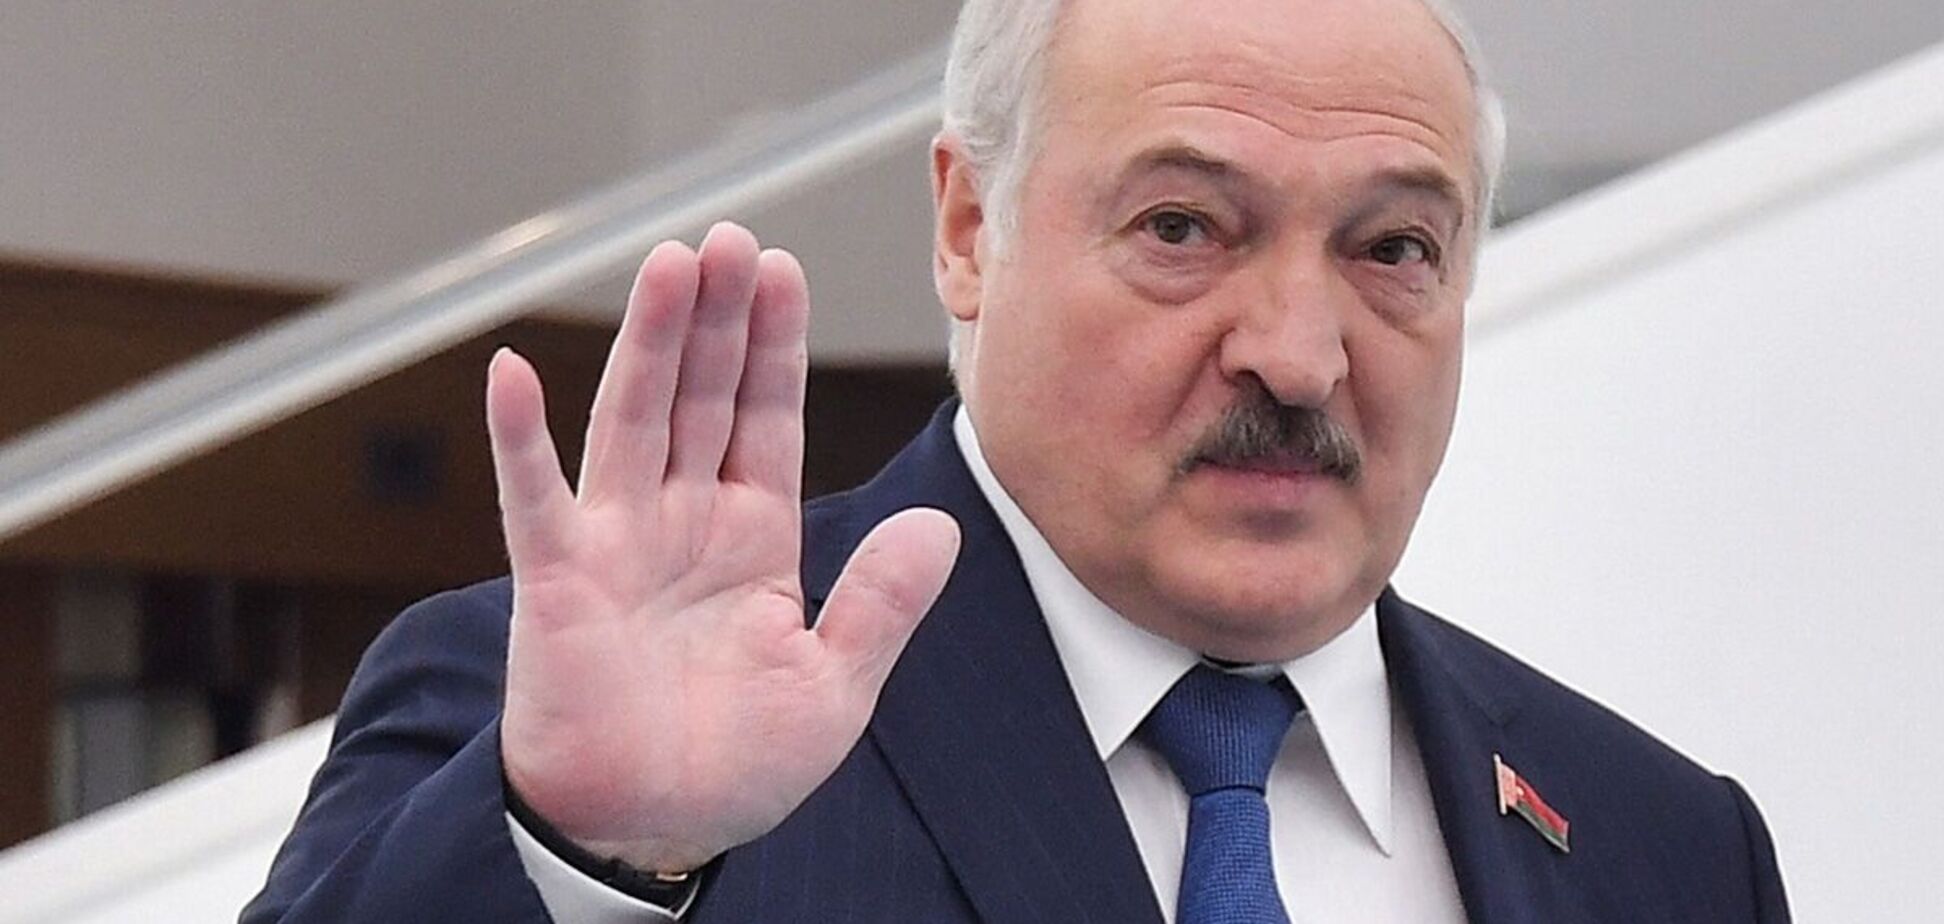 Лукашенко зʼявився на публіці після кількох днів відсутності: у нього перебинтована рука. Фото